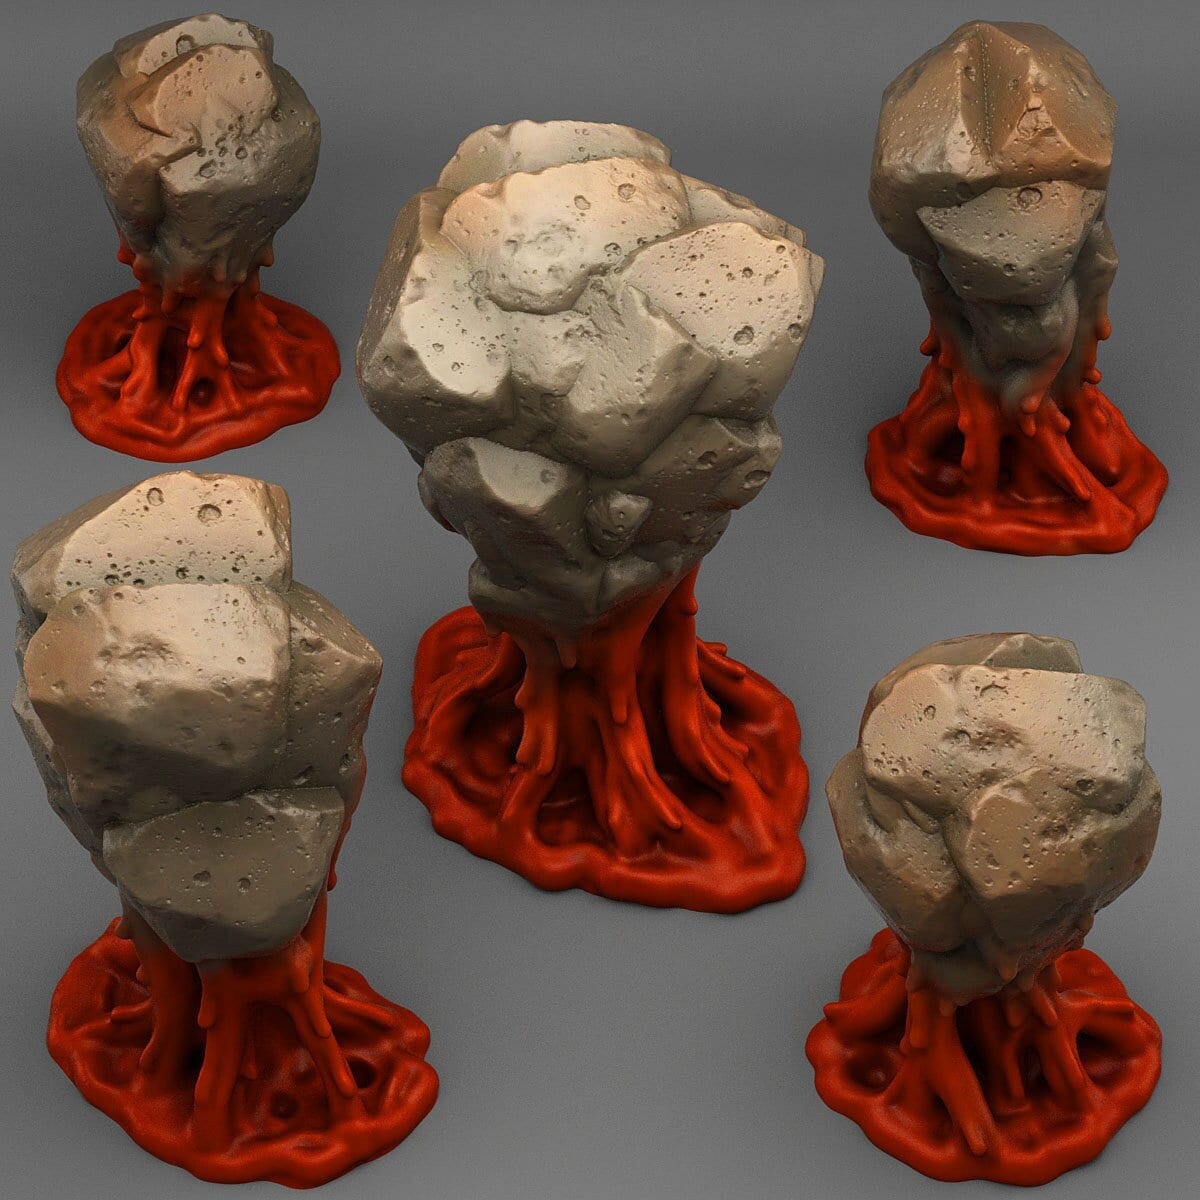 Blood Rock Terrain Miniatures | Stone Wargaming Terrain - Plague Miniatures